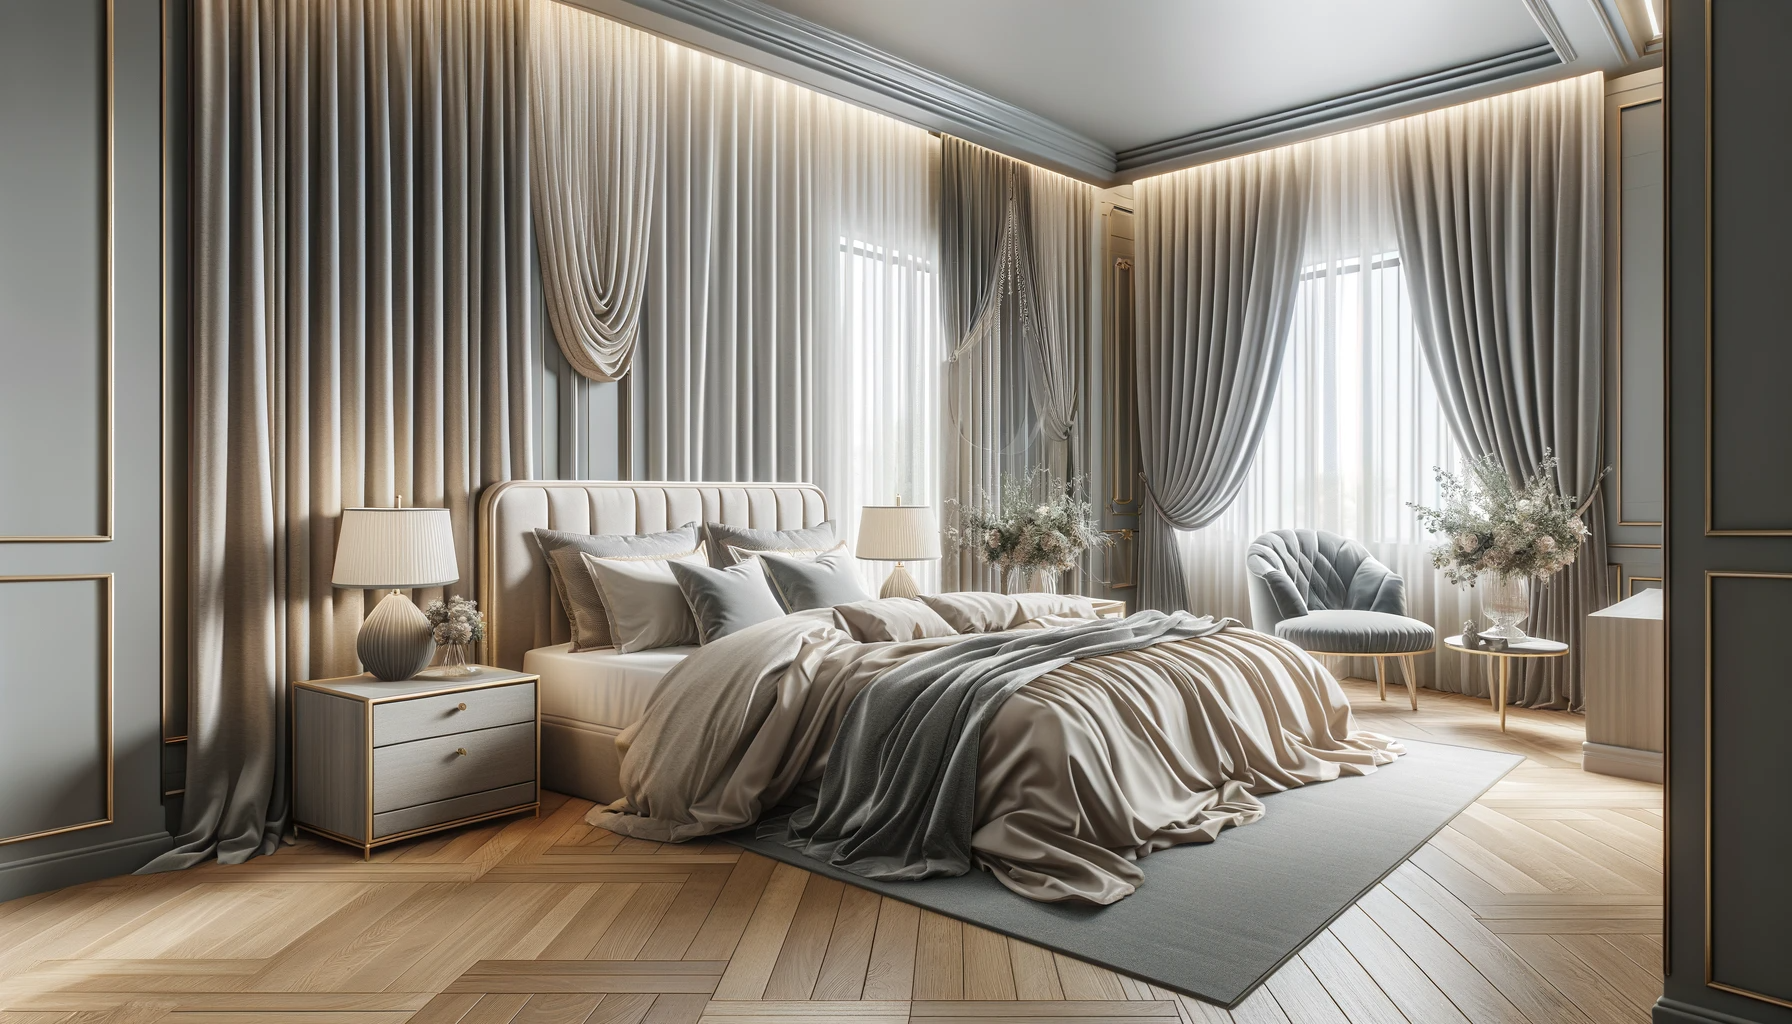 Quarto elegante com diferentes estilos de cortinas, combinando conforto e sofisticação em decoração de interiores.